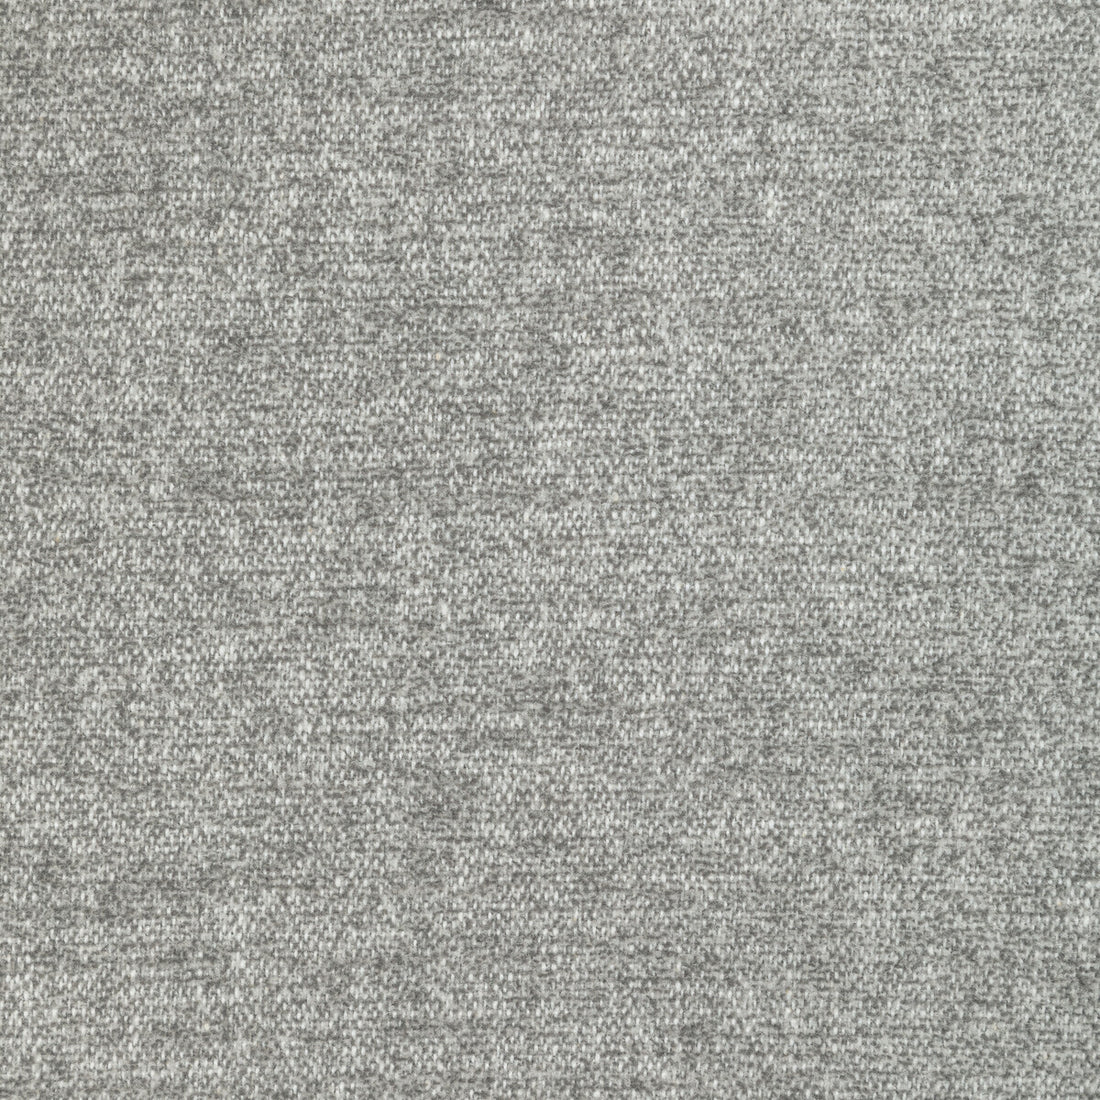 Kravet Basics fabric in 36373-11 color - pattern 36373.11.0 - by Kravet Basics